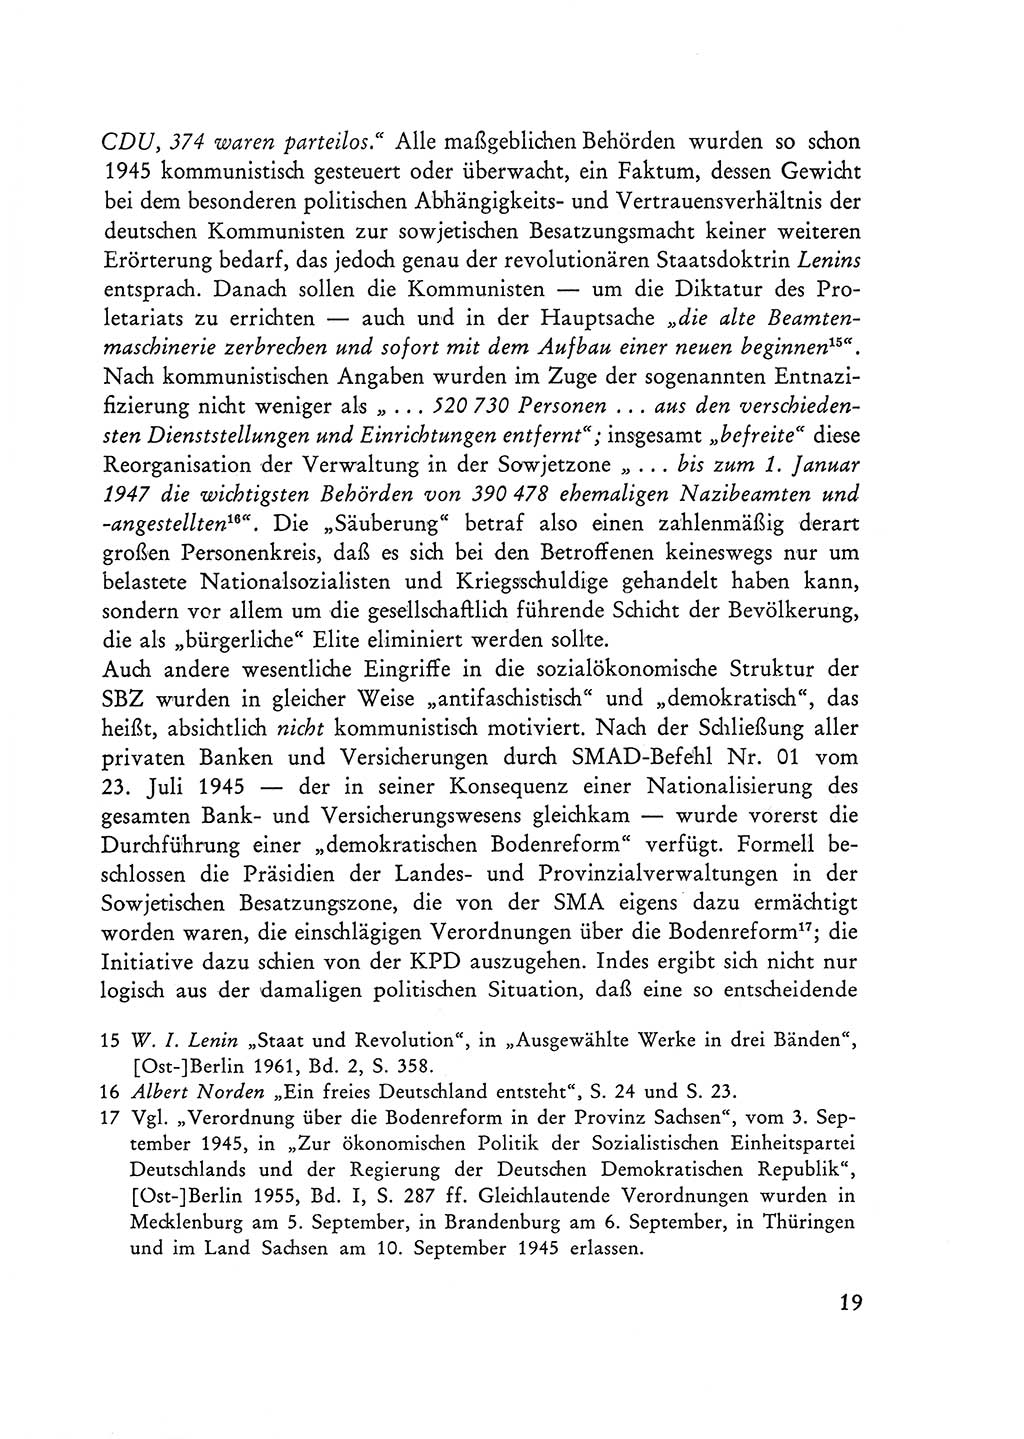 Selbstbehauptung und Widerstand in der Sowjetischen Besatzungszone (SBZ) Deutschlands [Deutsche Demokratische Republik (DDR)] 1964, Seite 19 (Selbstbeh. Wdst. SBZ Dtl. DDR 1964, S. 19)